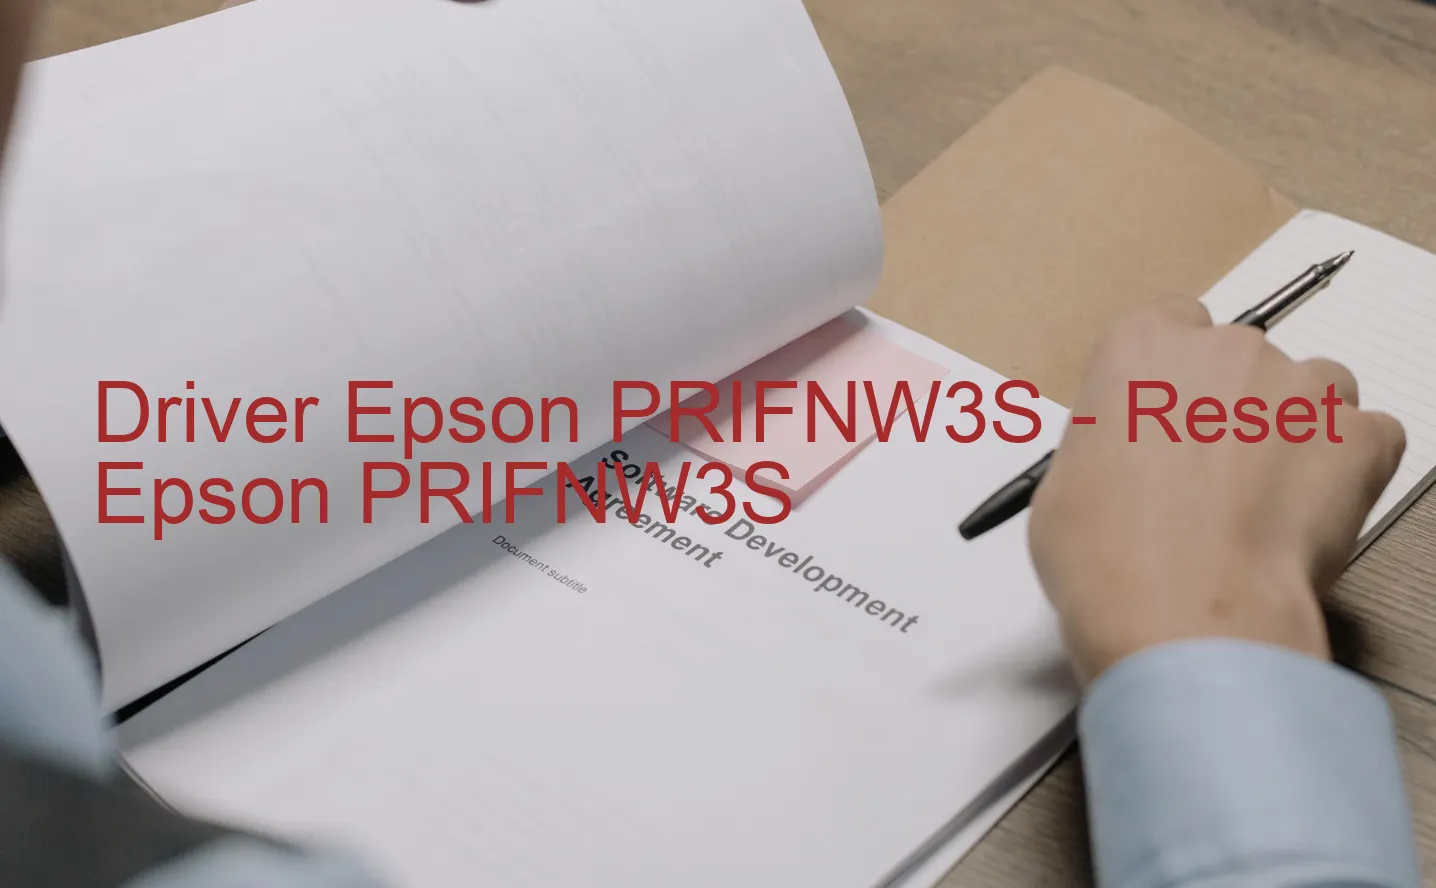 Epson PRIFNW3Sのドライバー、Epson PRIFNW3Sのリセットソフトウェア